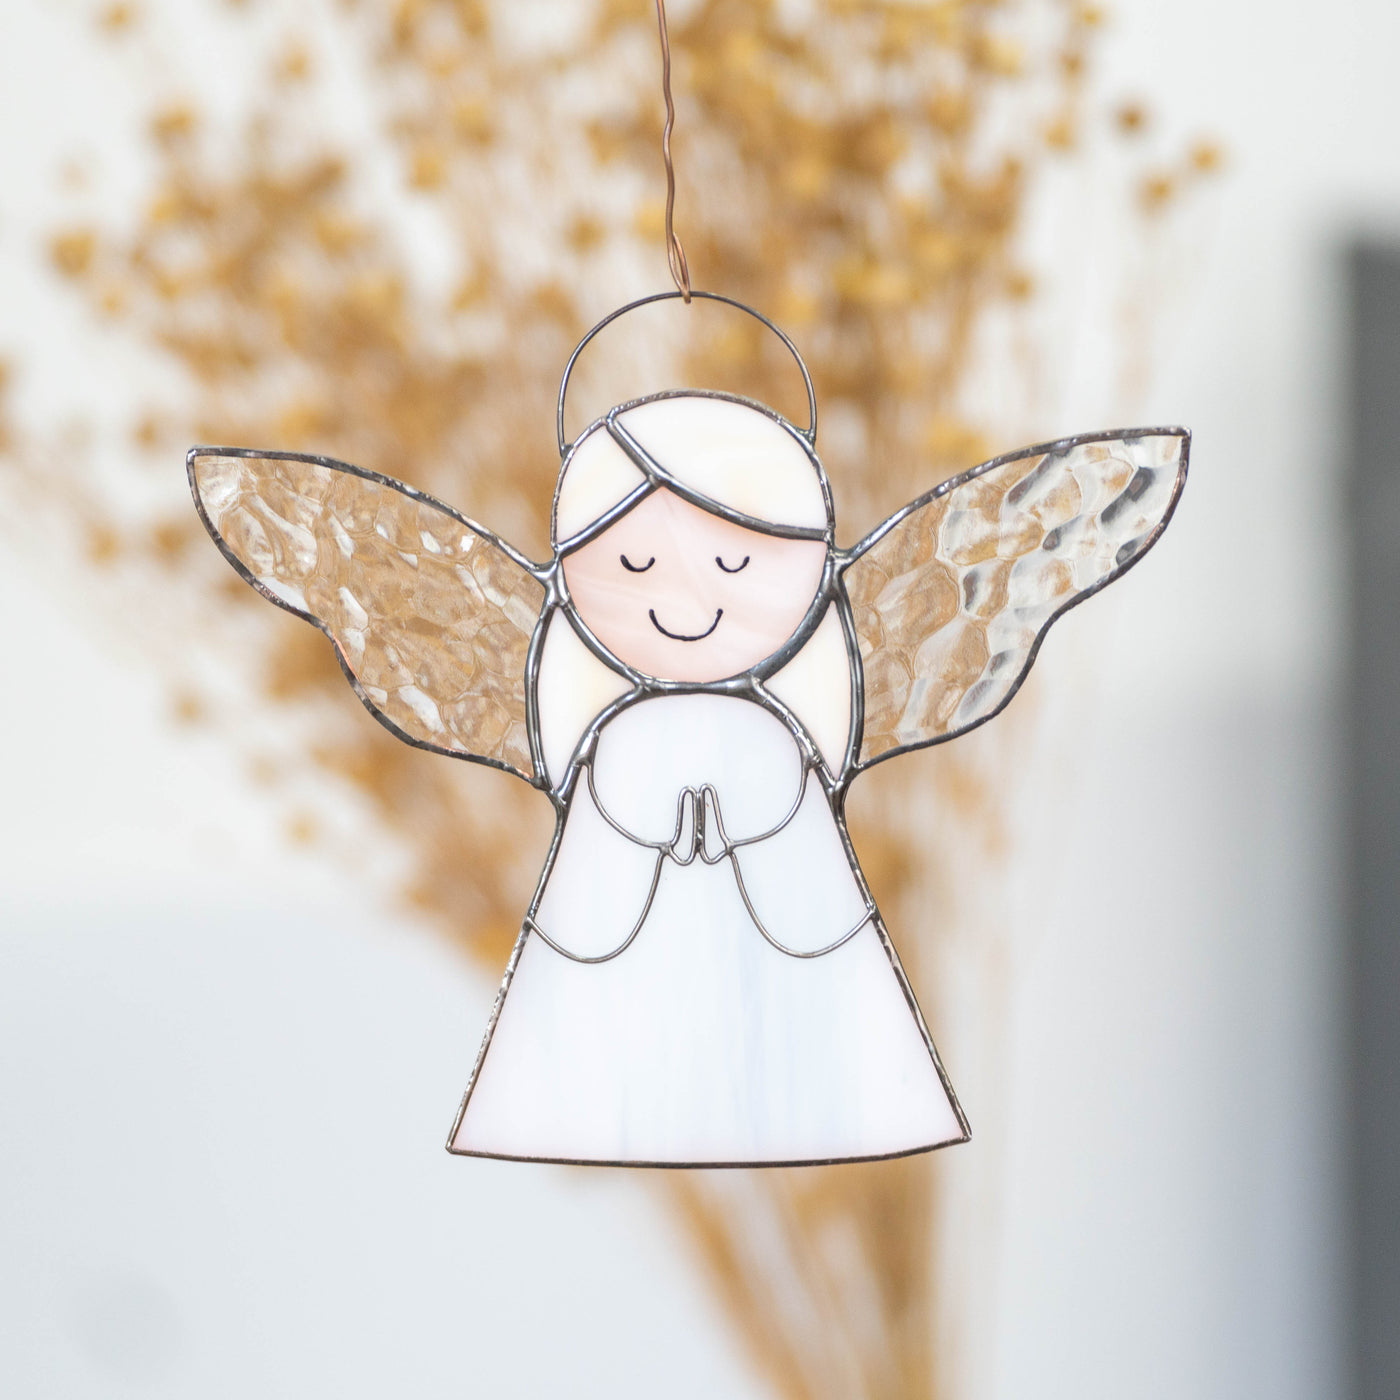 Stained glass angel girl suncatcher for Christmas decor